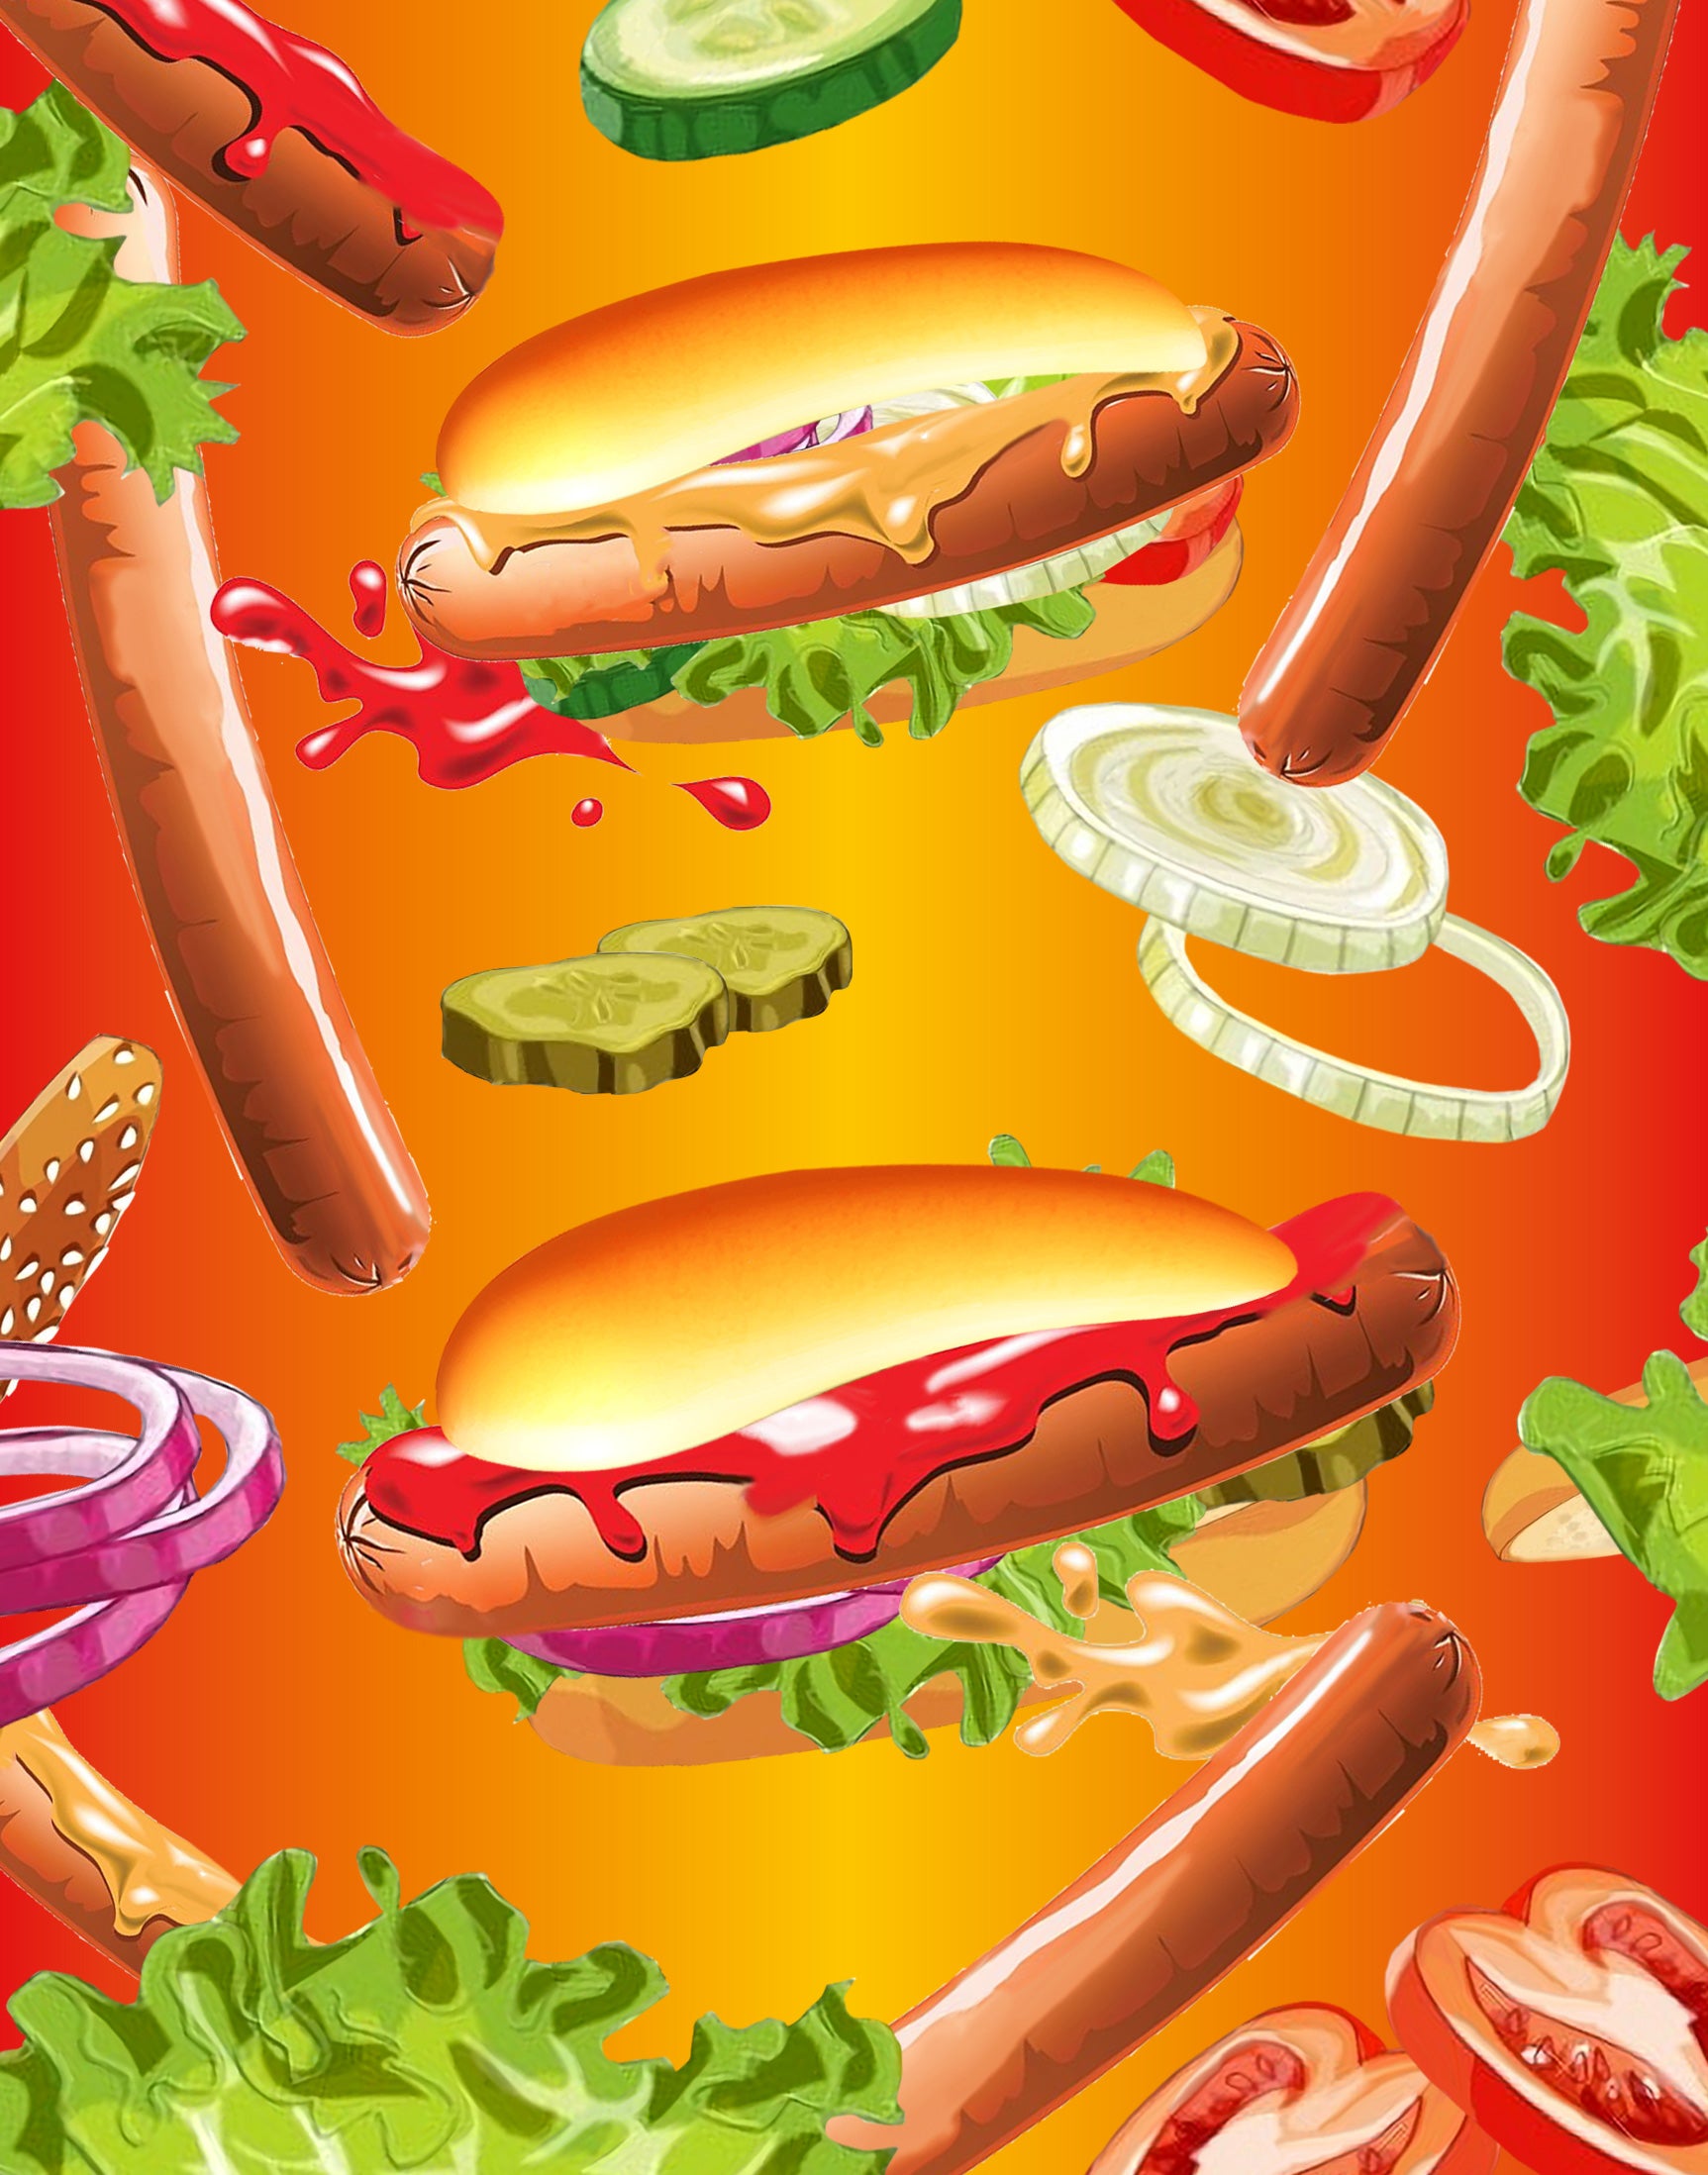 Hot Dog - Puzzleyourpet